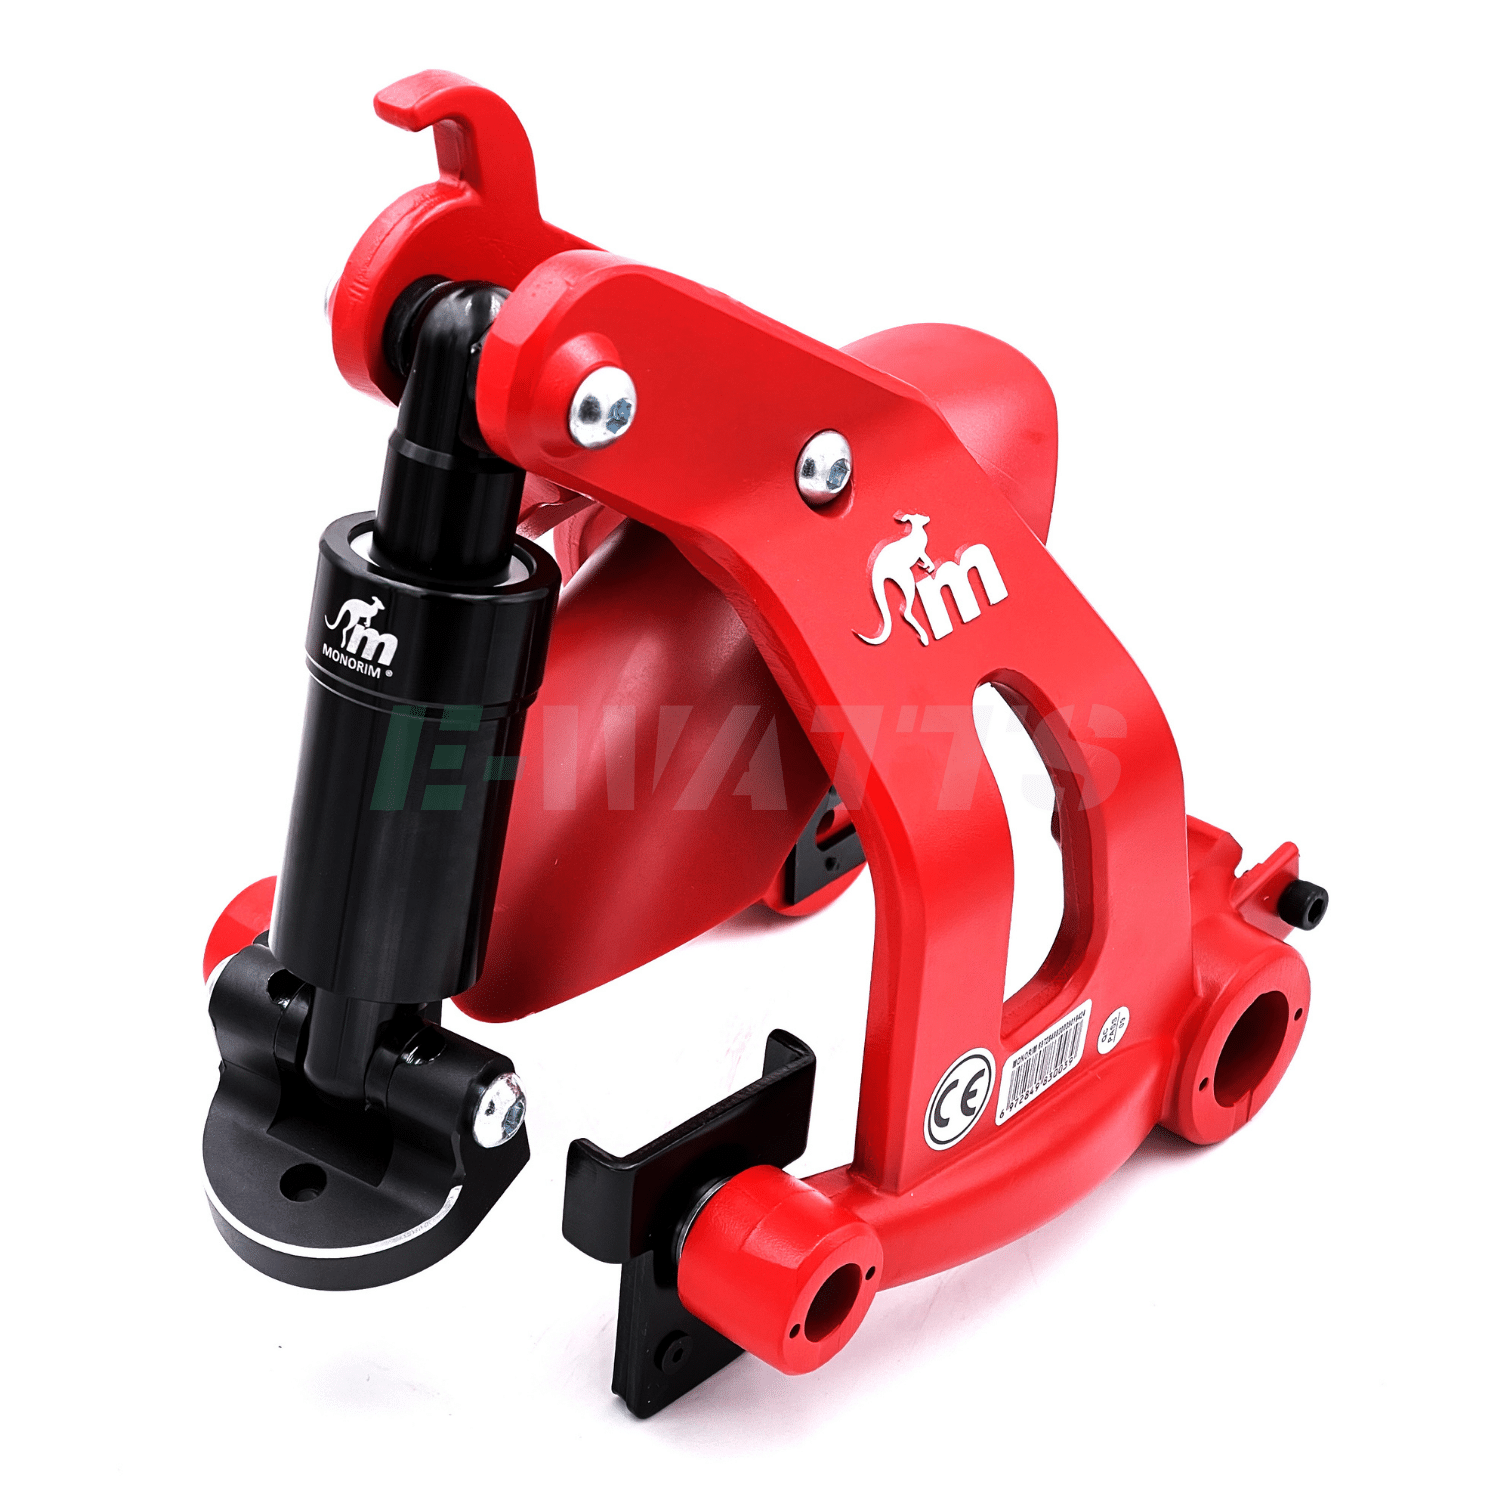 suspension arrière monorim xiaomi m365, pro, 2, 1s, scooter 3, essential rouge et noire